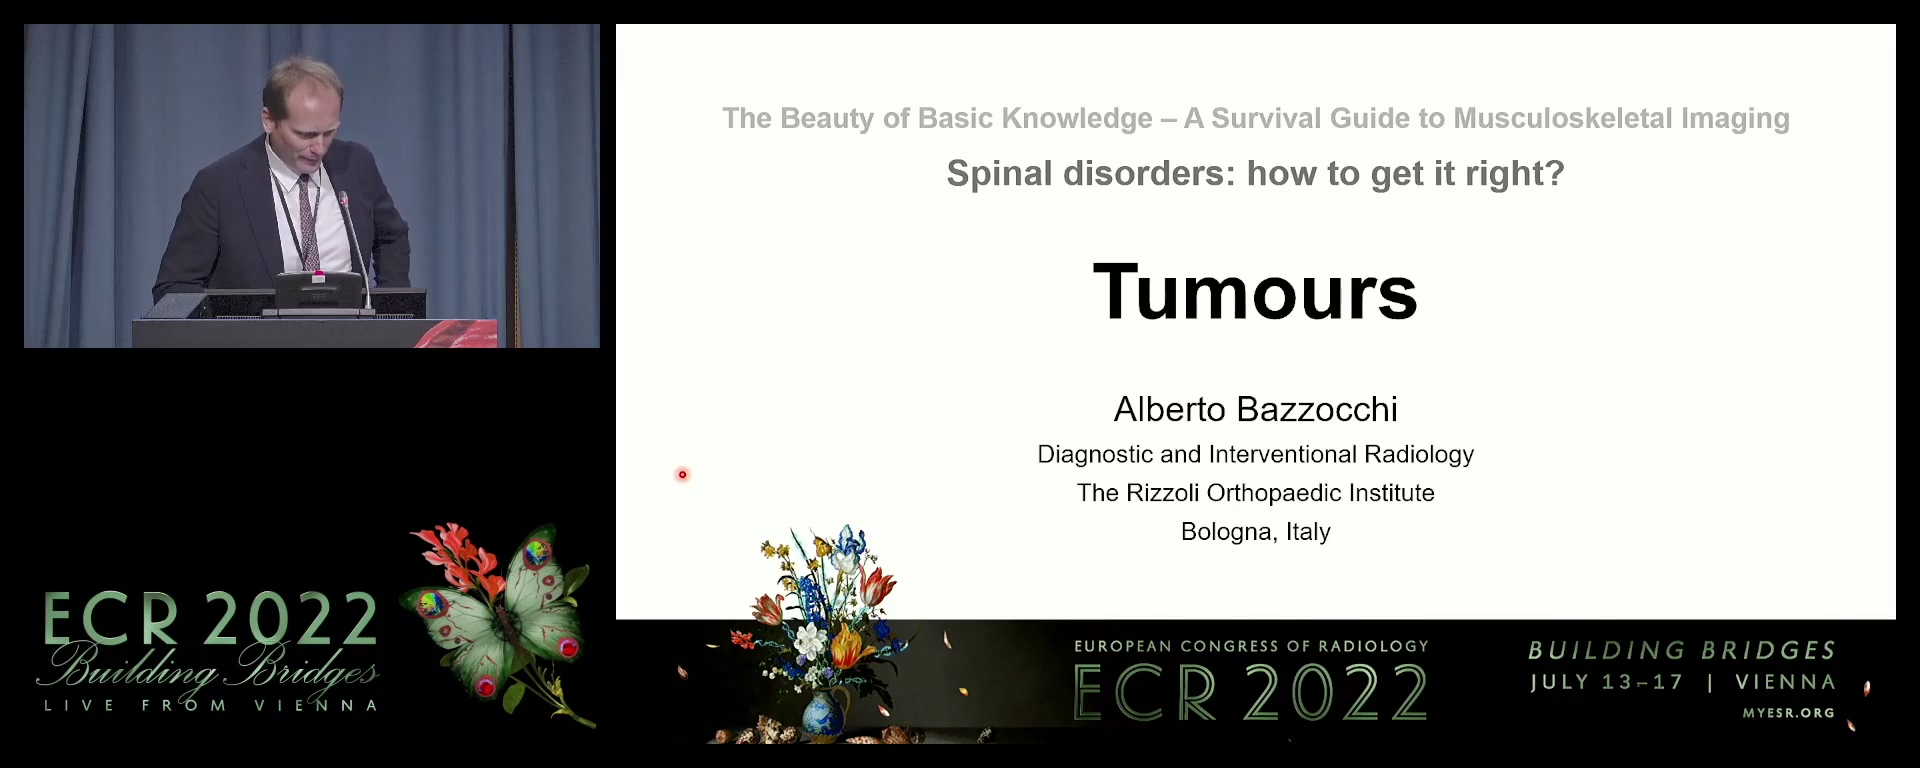 Tumours - Alberto Bazzocchi, Bologna / IT